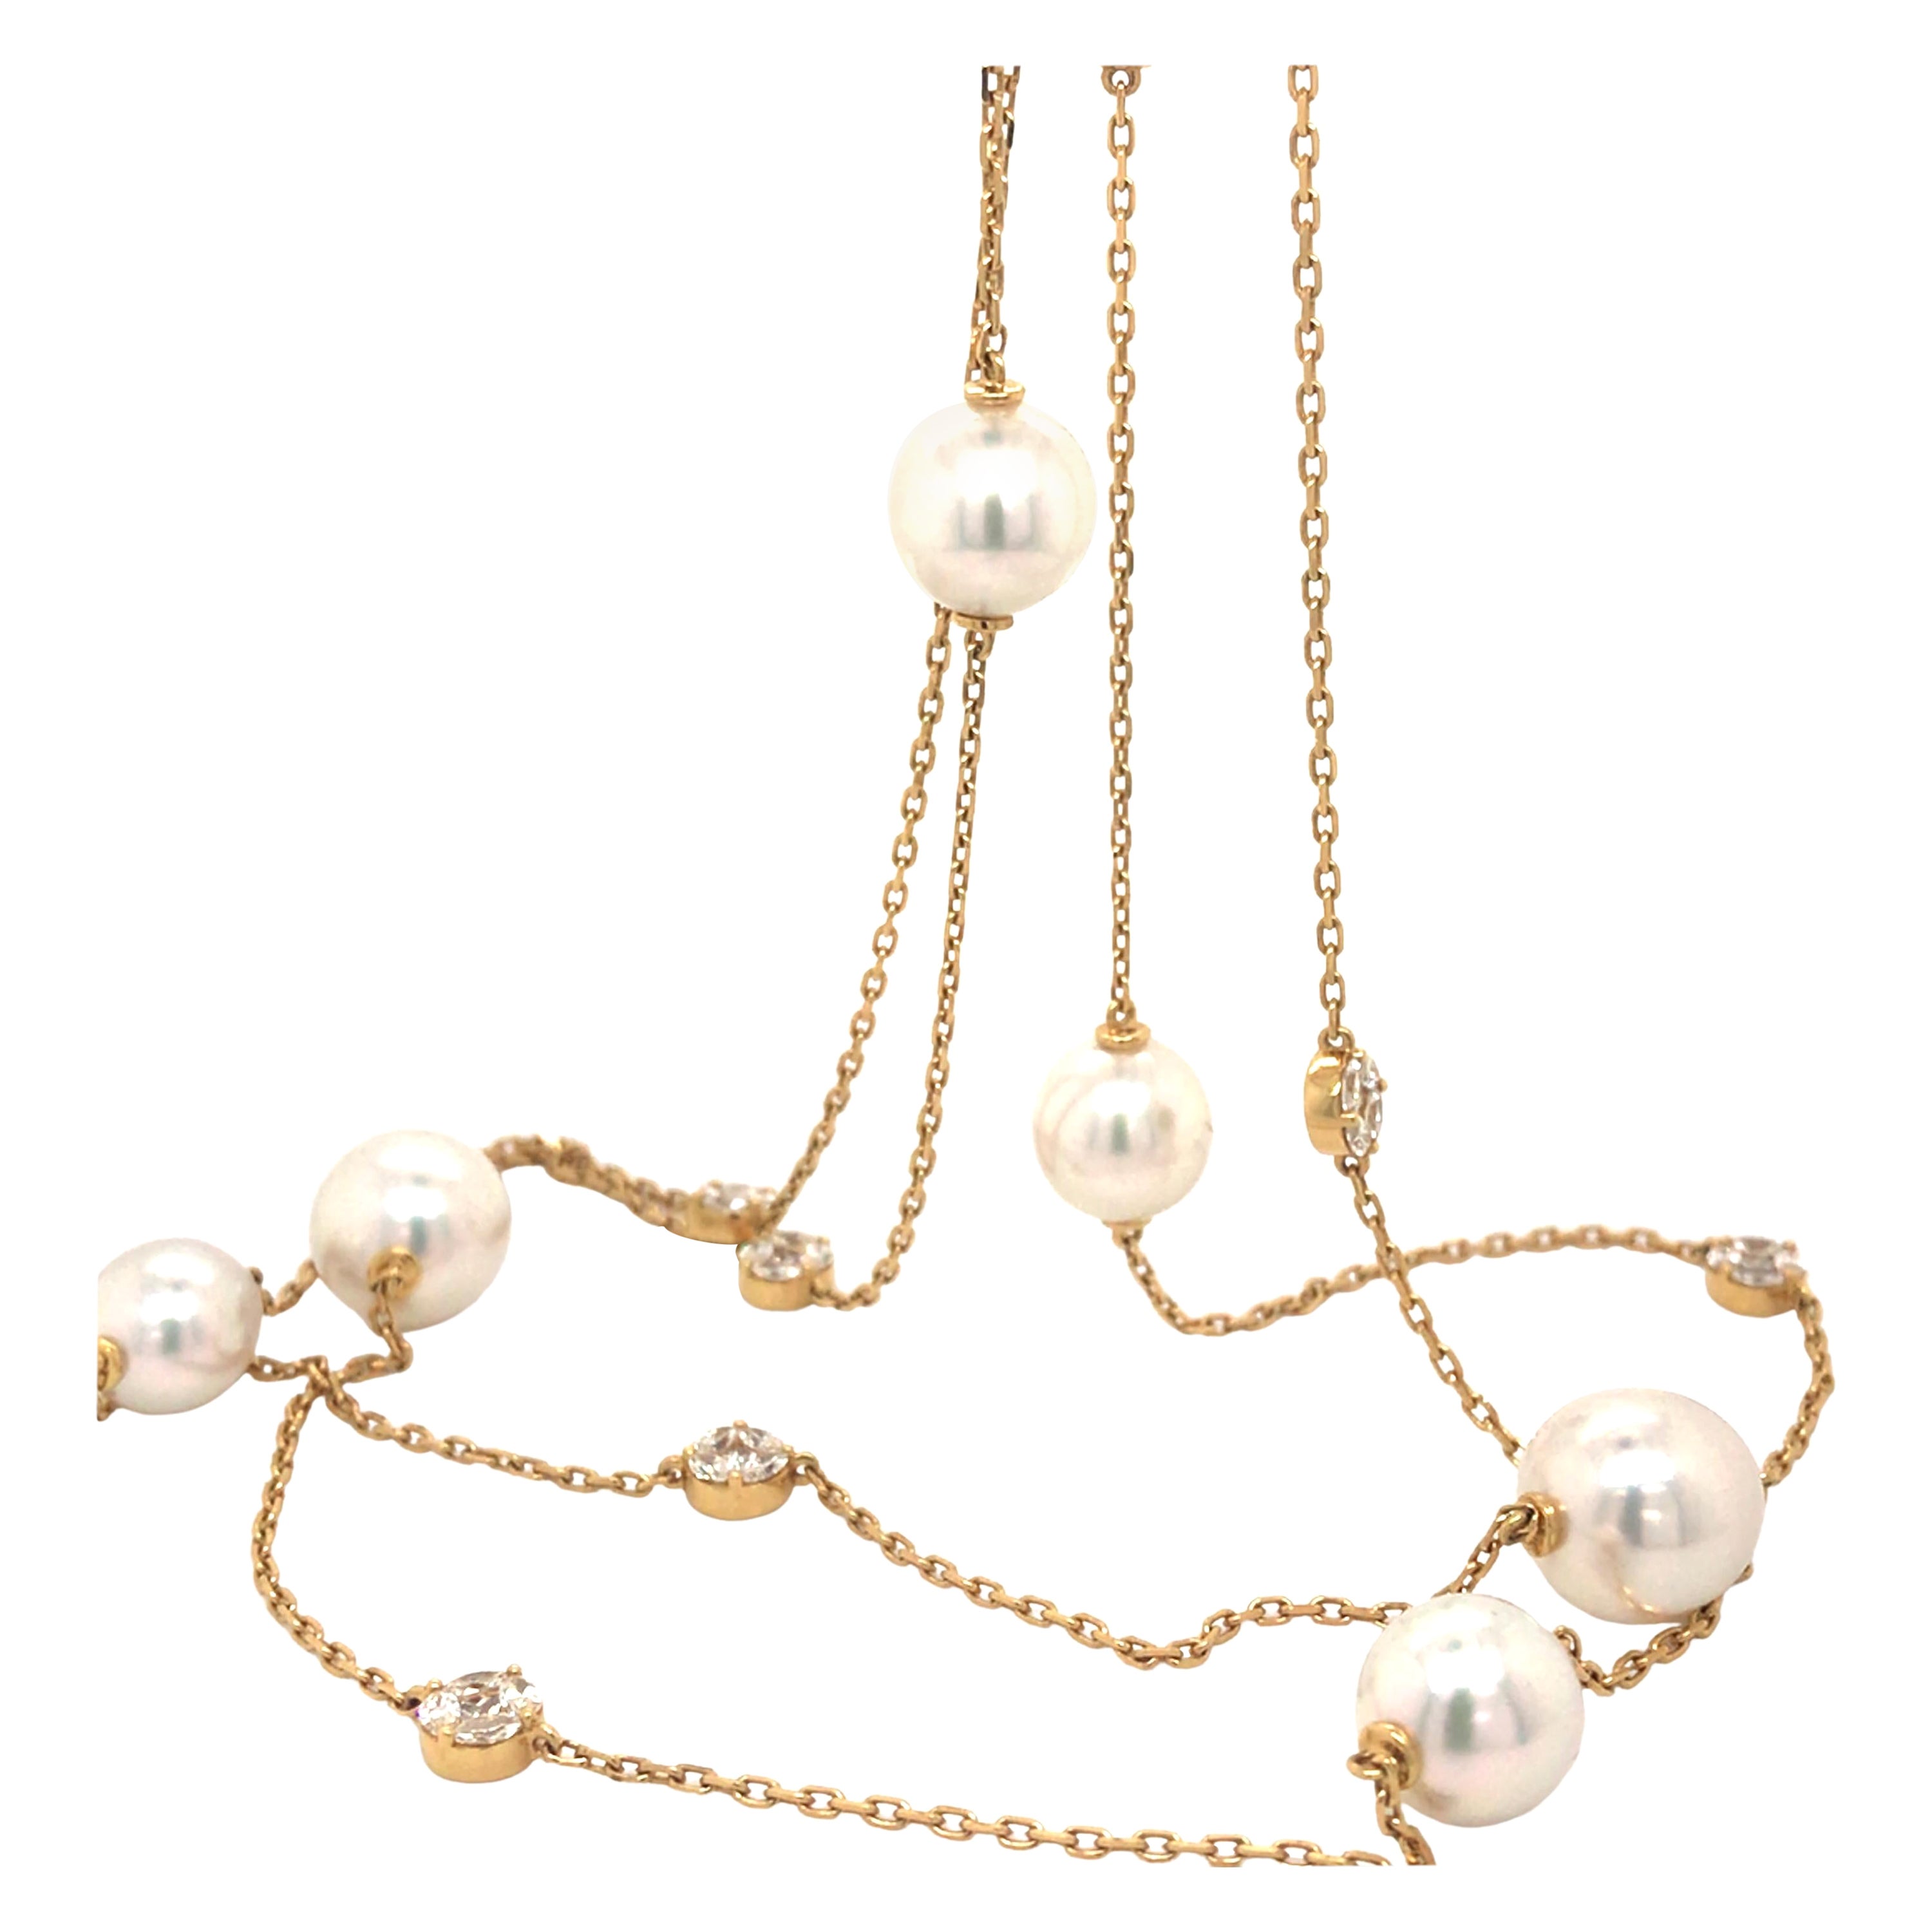 Collier de chaîne en or avec perles et diamants, longueur Opéra